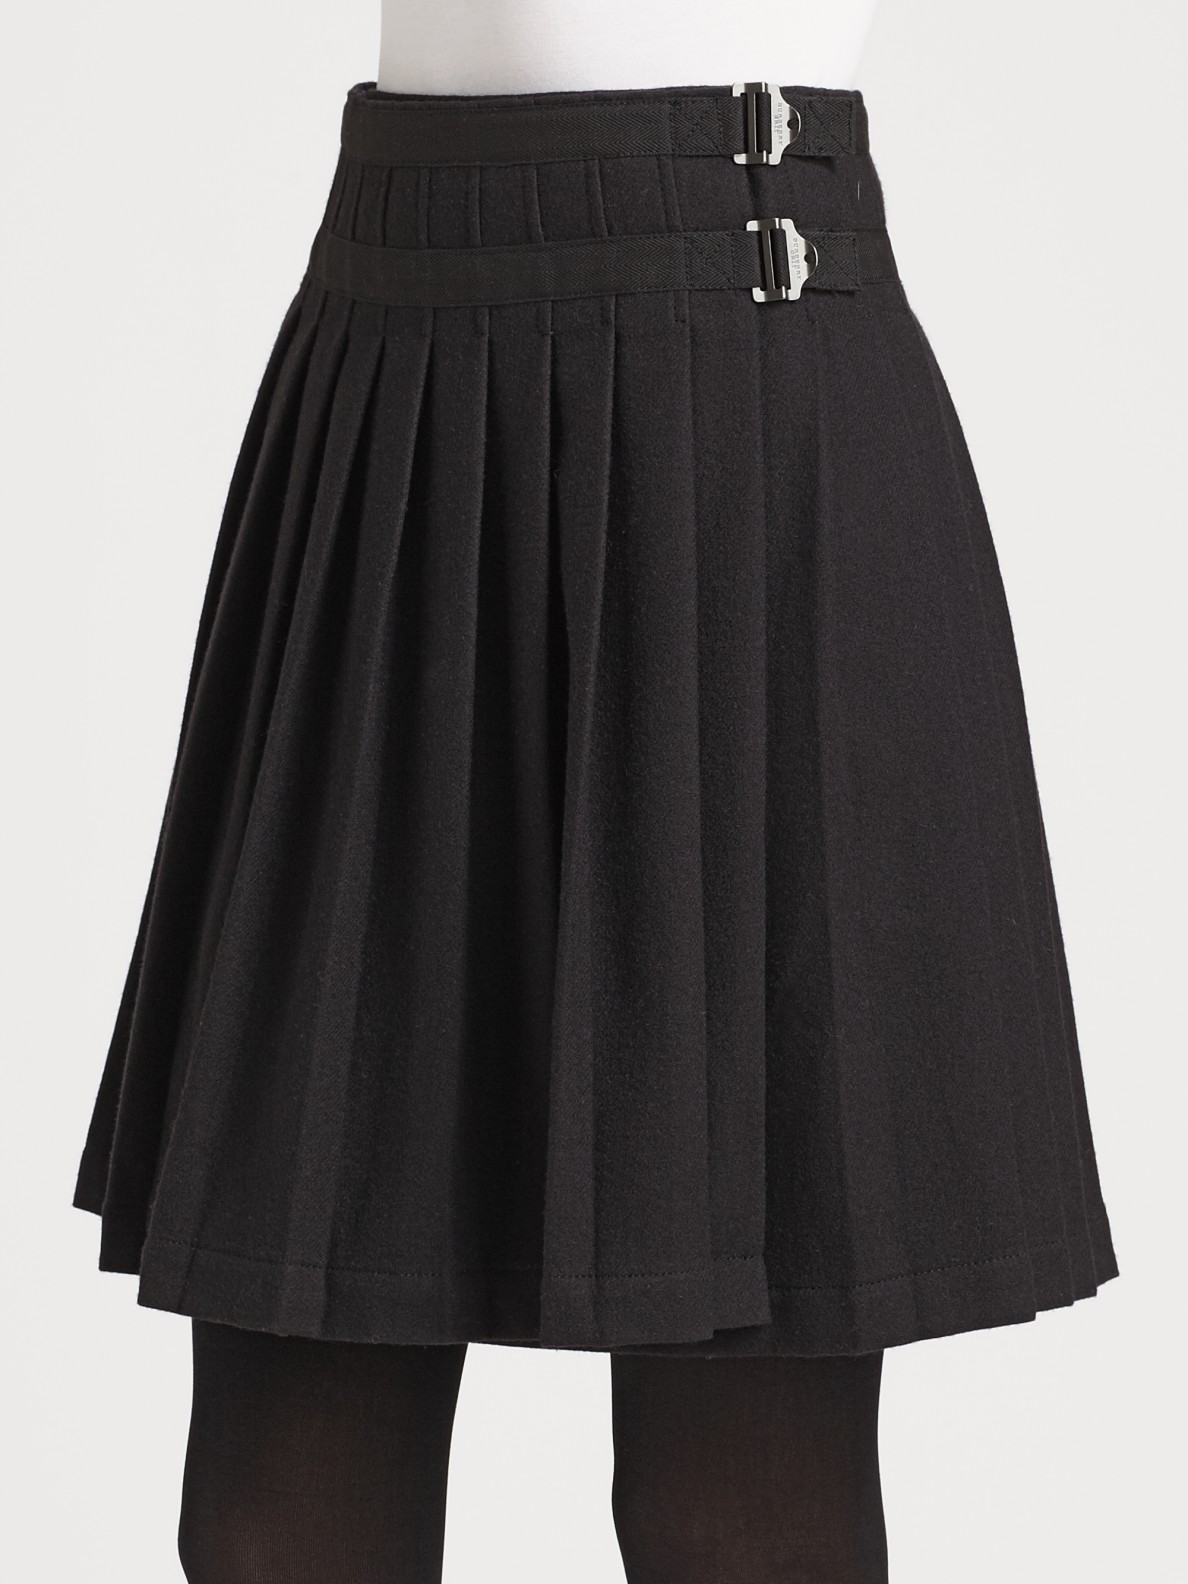 Burberry Brit Pleated Kilt Skirt in Black | Lyst